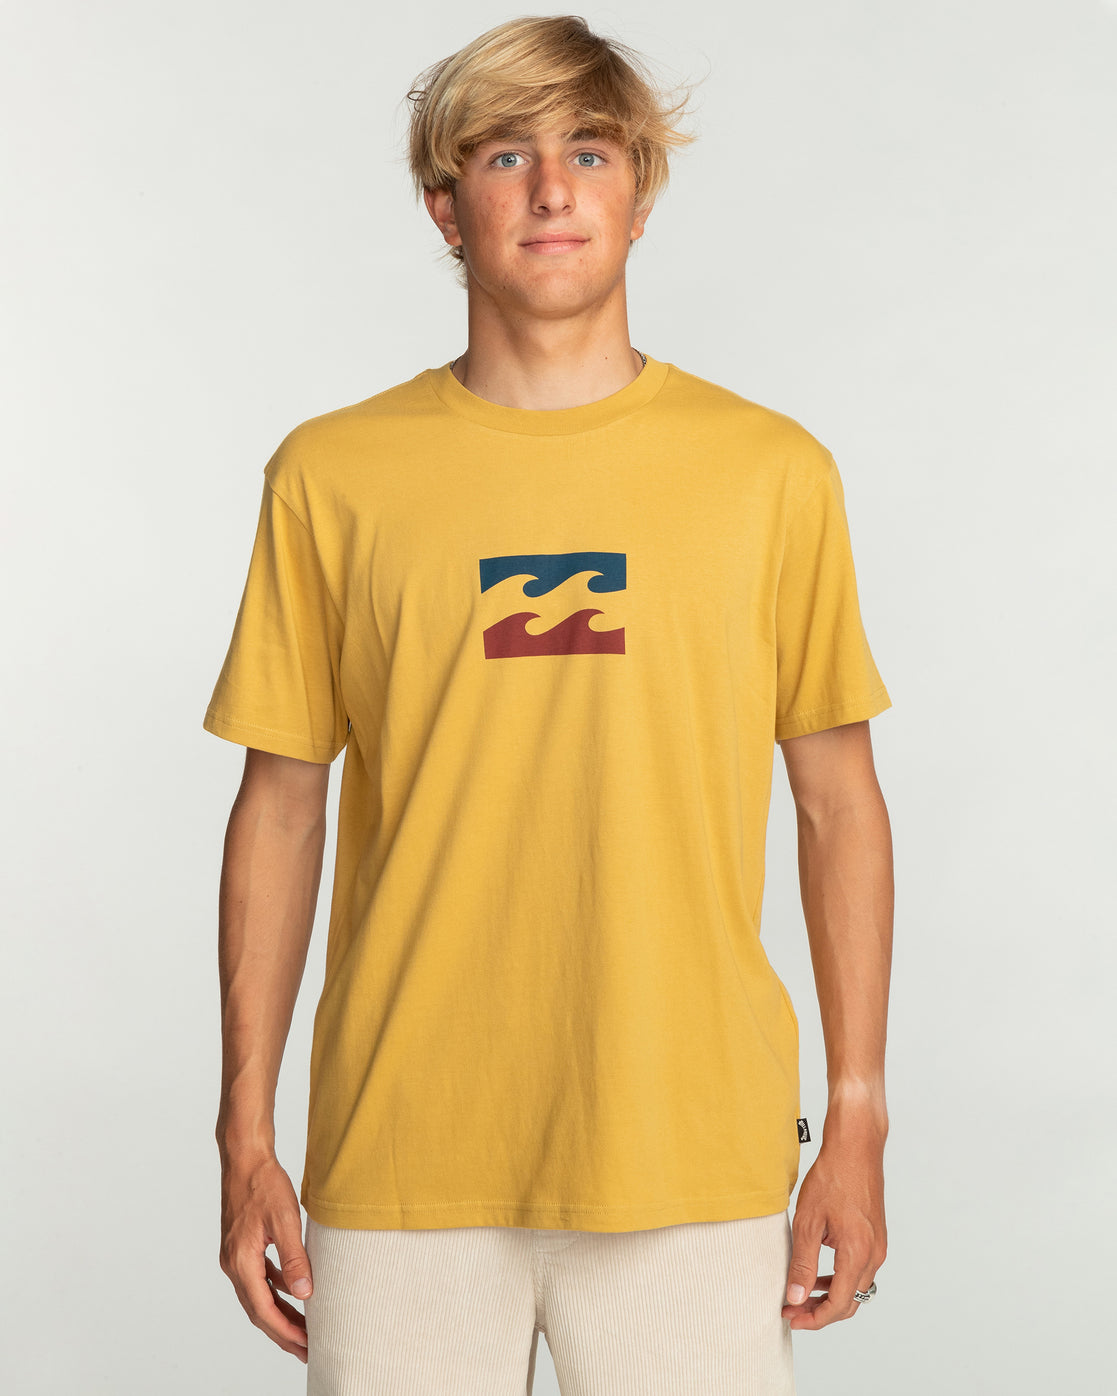 Billabong Team Wave T-Shirt in Gold